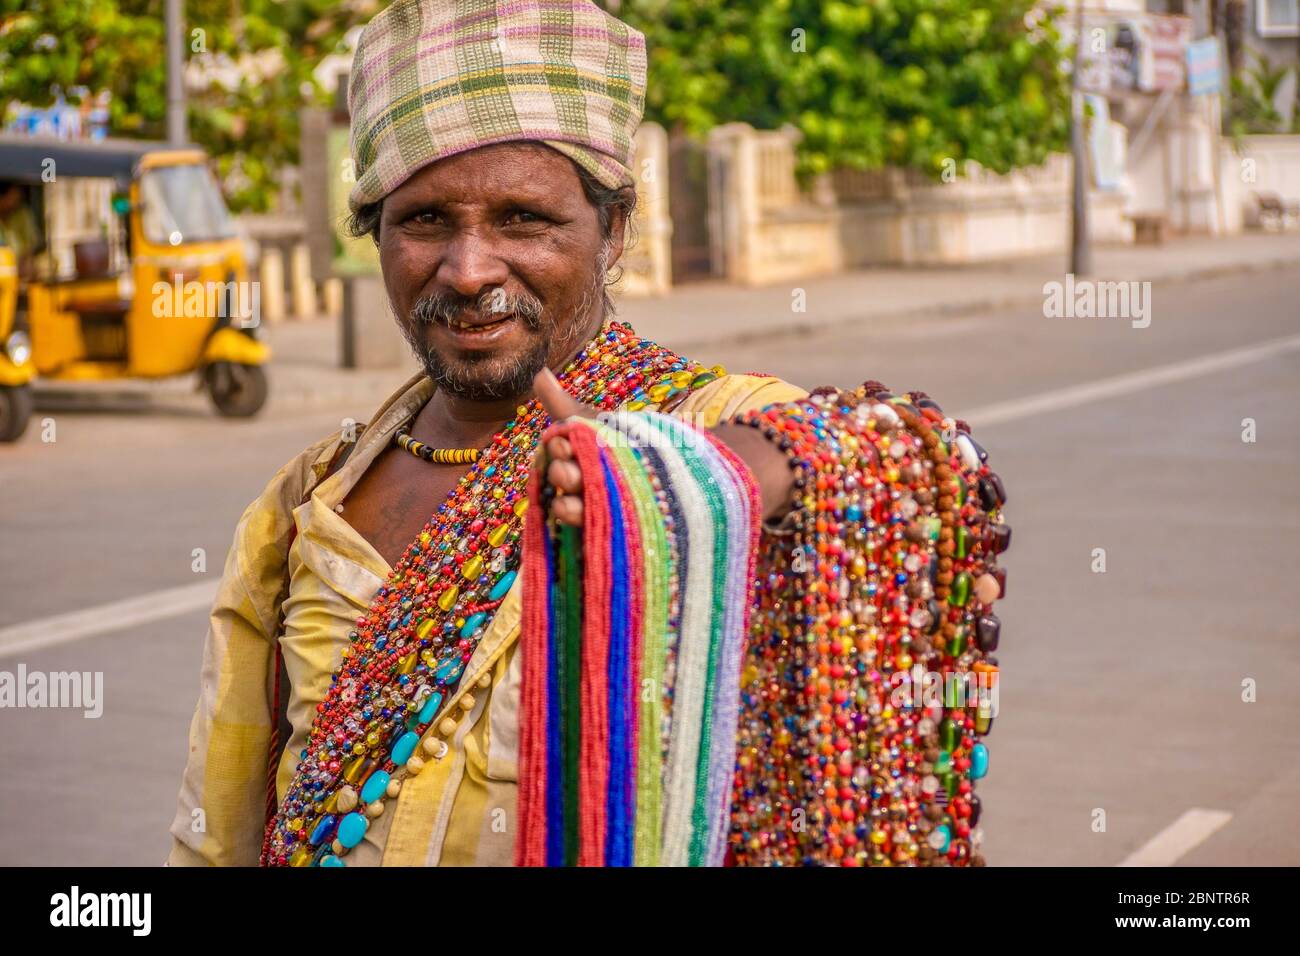 Pondichéry, Inde - 8 décembre 2013. Un vendeur de rue indien travaillant dans l'économie informelle du pays, essayant de vendre des colliers colorés perlés. Banque D'Images